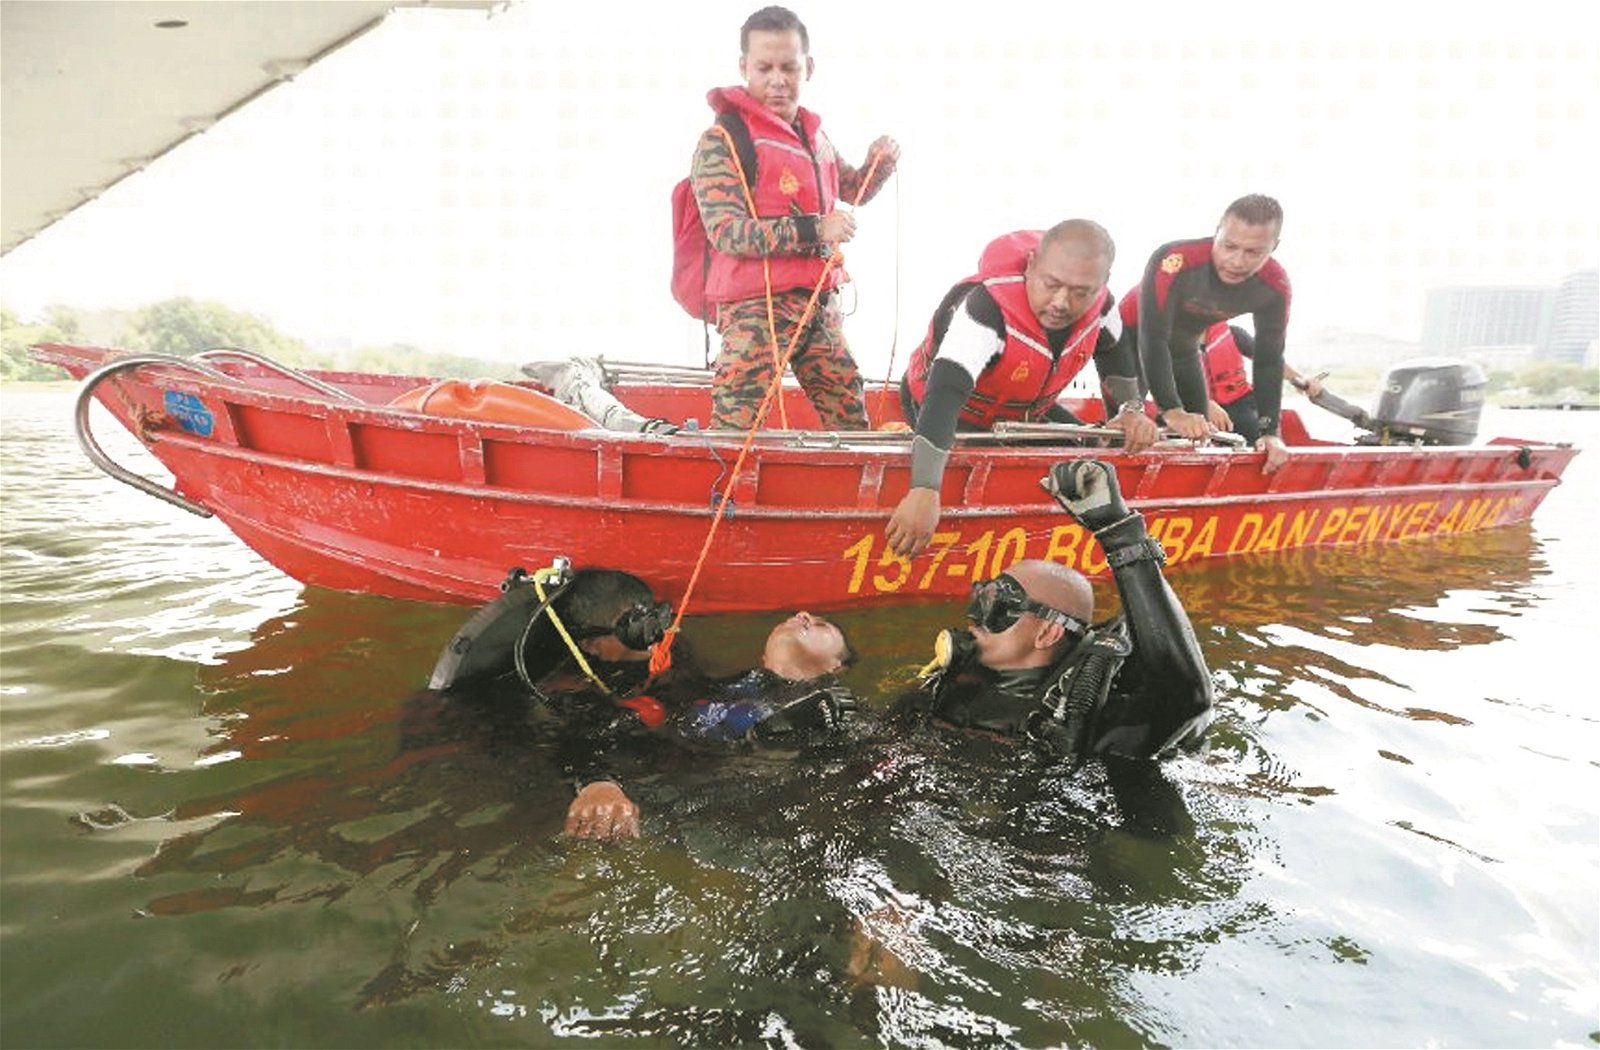 模拟救人行动：消拯队搜救队队员在河上进行模拟救人行动， 由一名队员假扮成遇溺人士，再由其他队员利用各种所学到的水中搜救技能将其救起来。